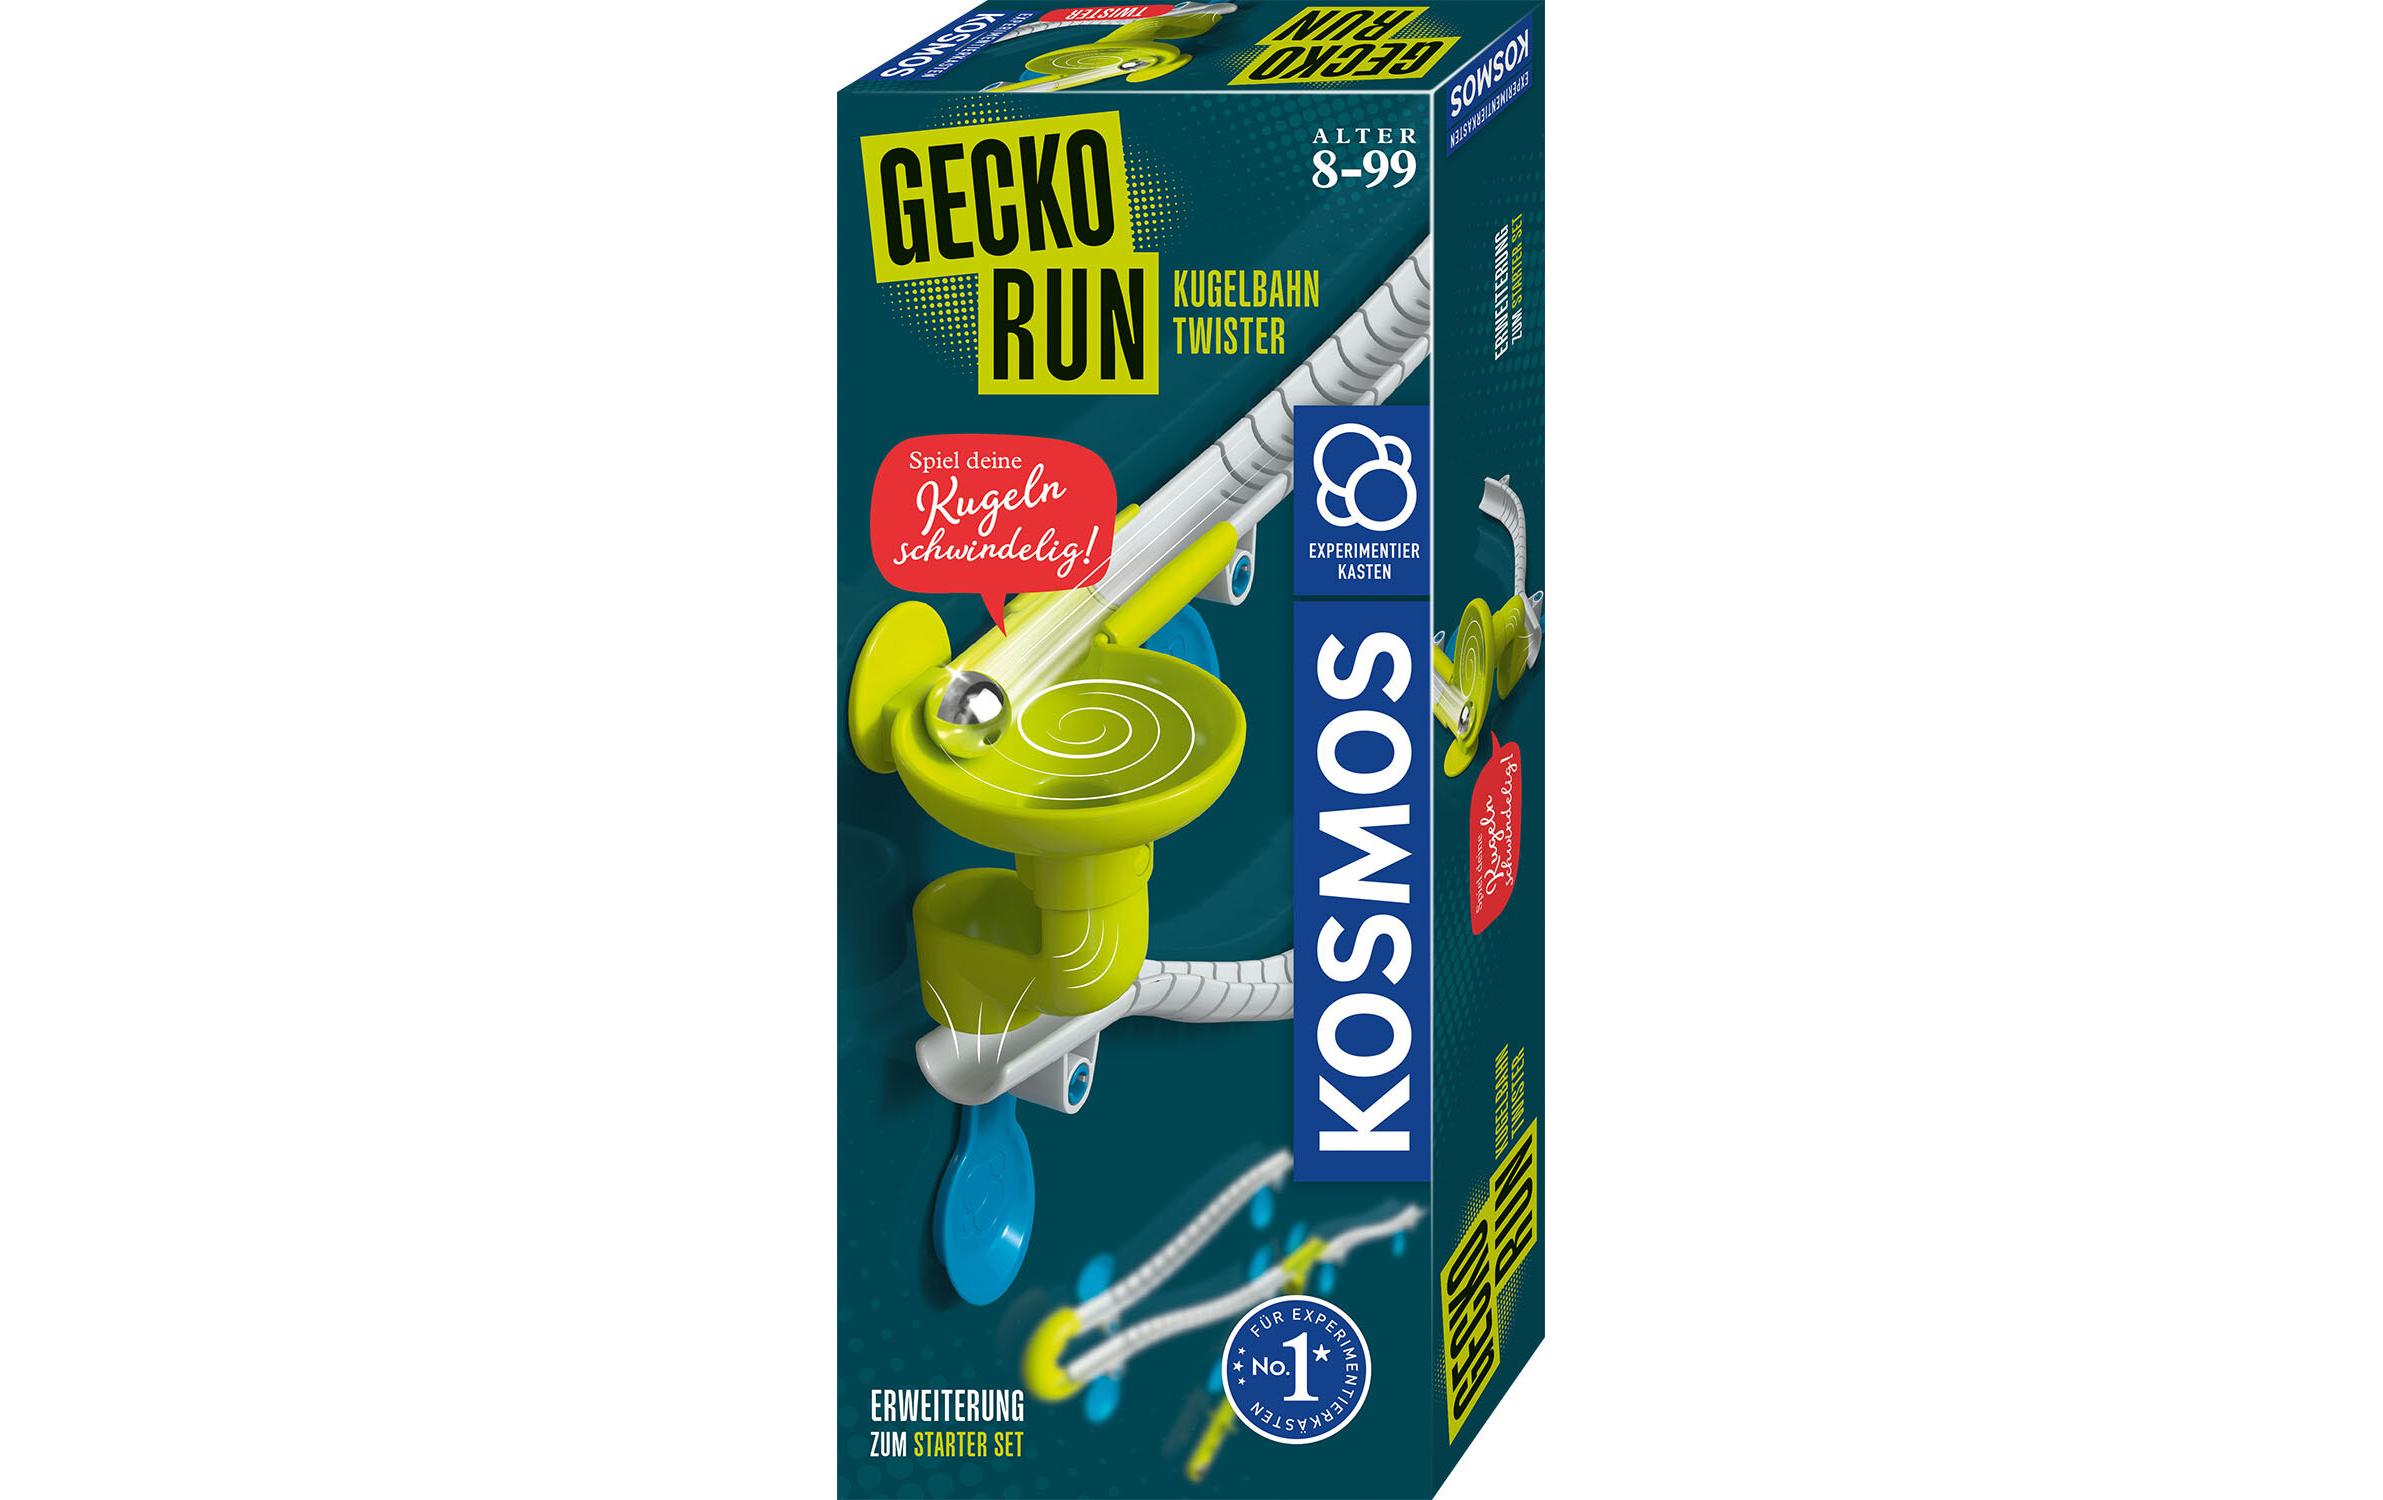 Kosmos Kugelbahn Zubehör Gecko Run – Twister-Expansion